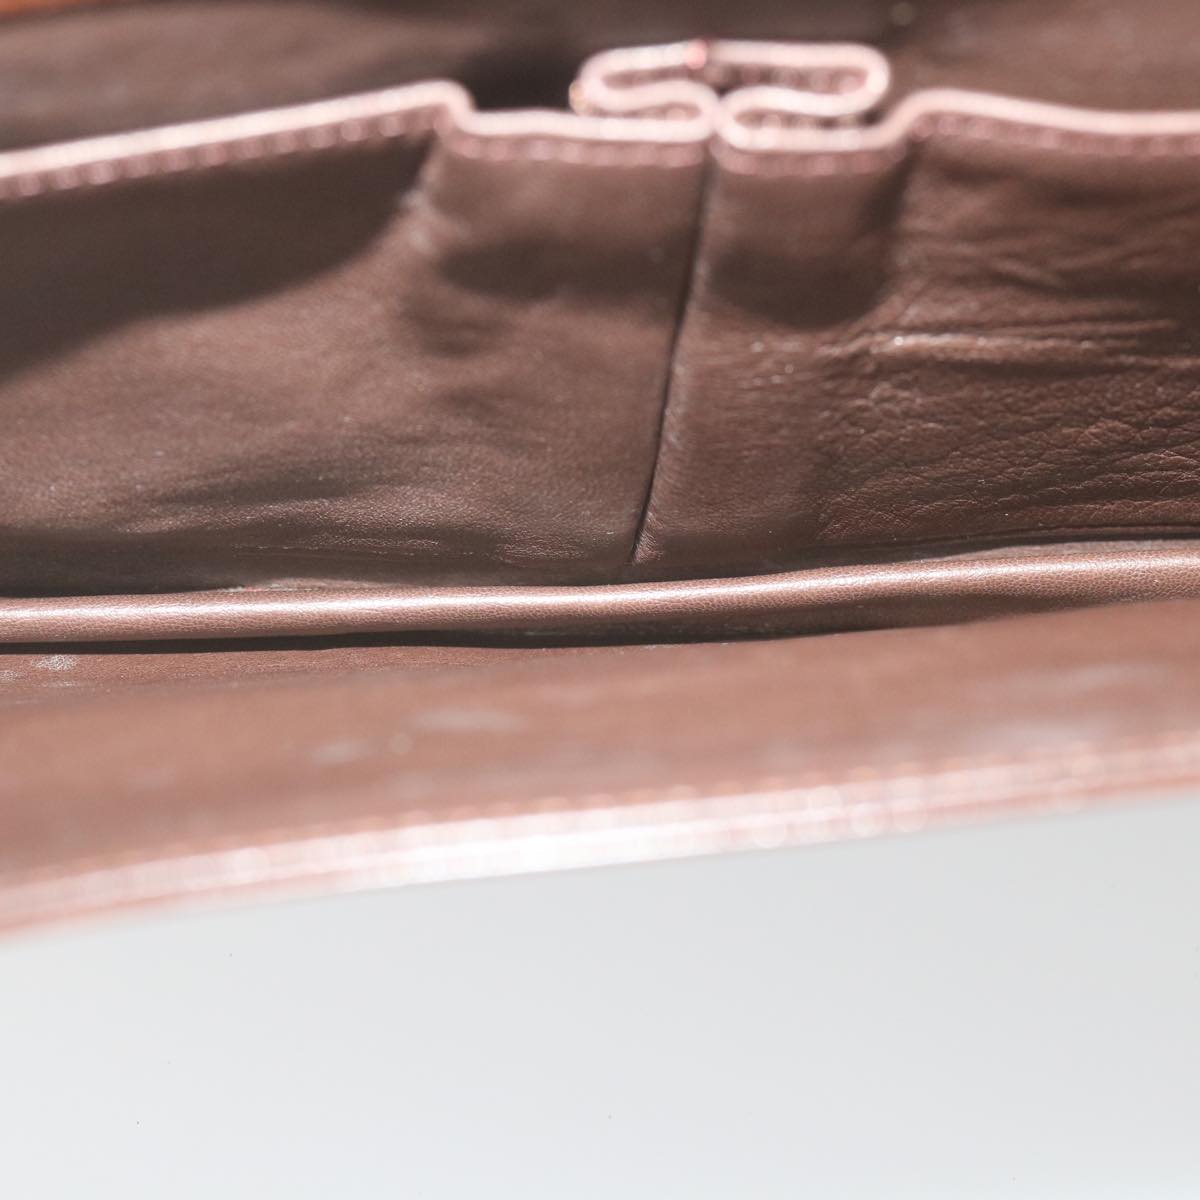 SAINT LAURENT Shoulder Bag Leather Brown Auth bs9993